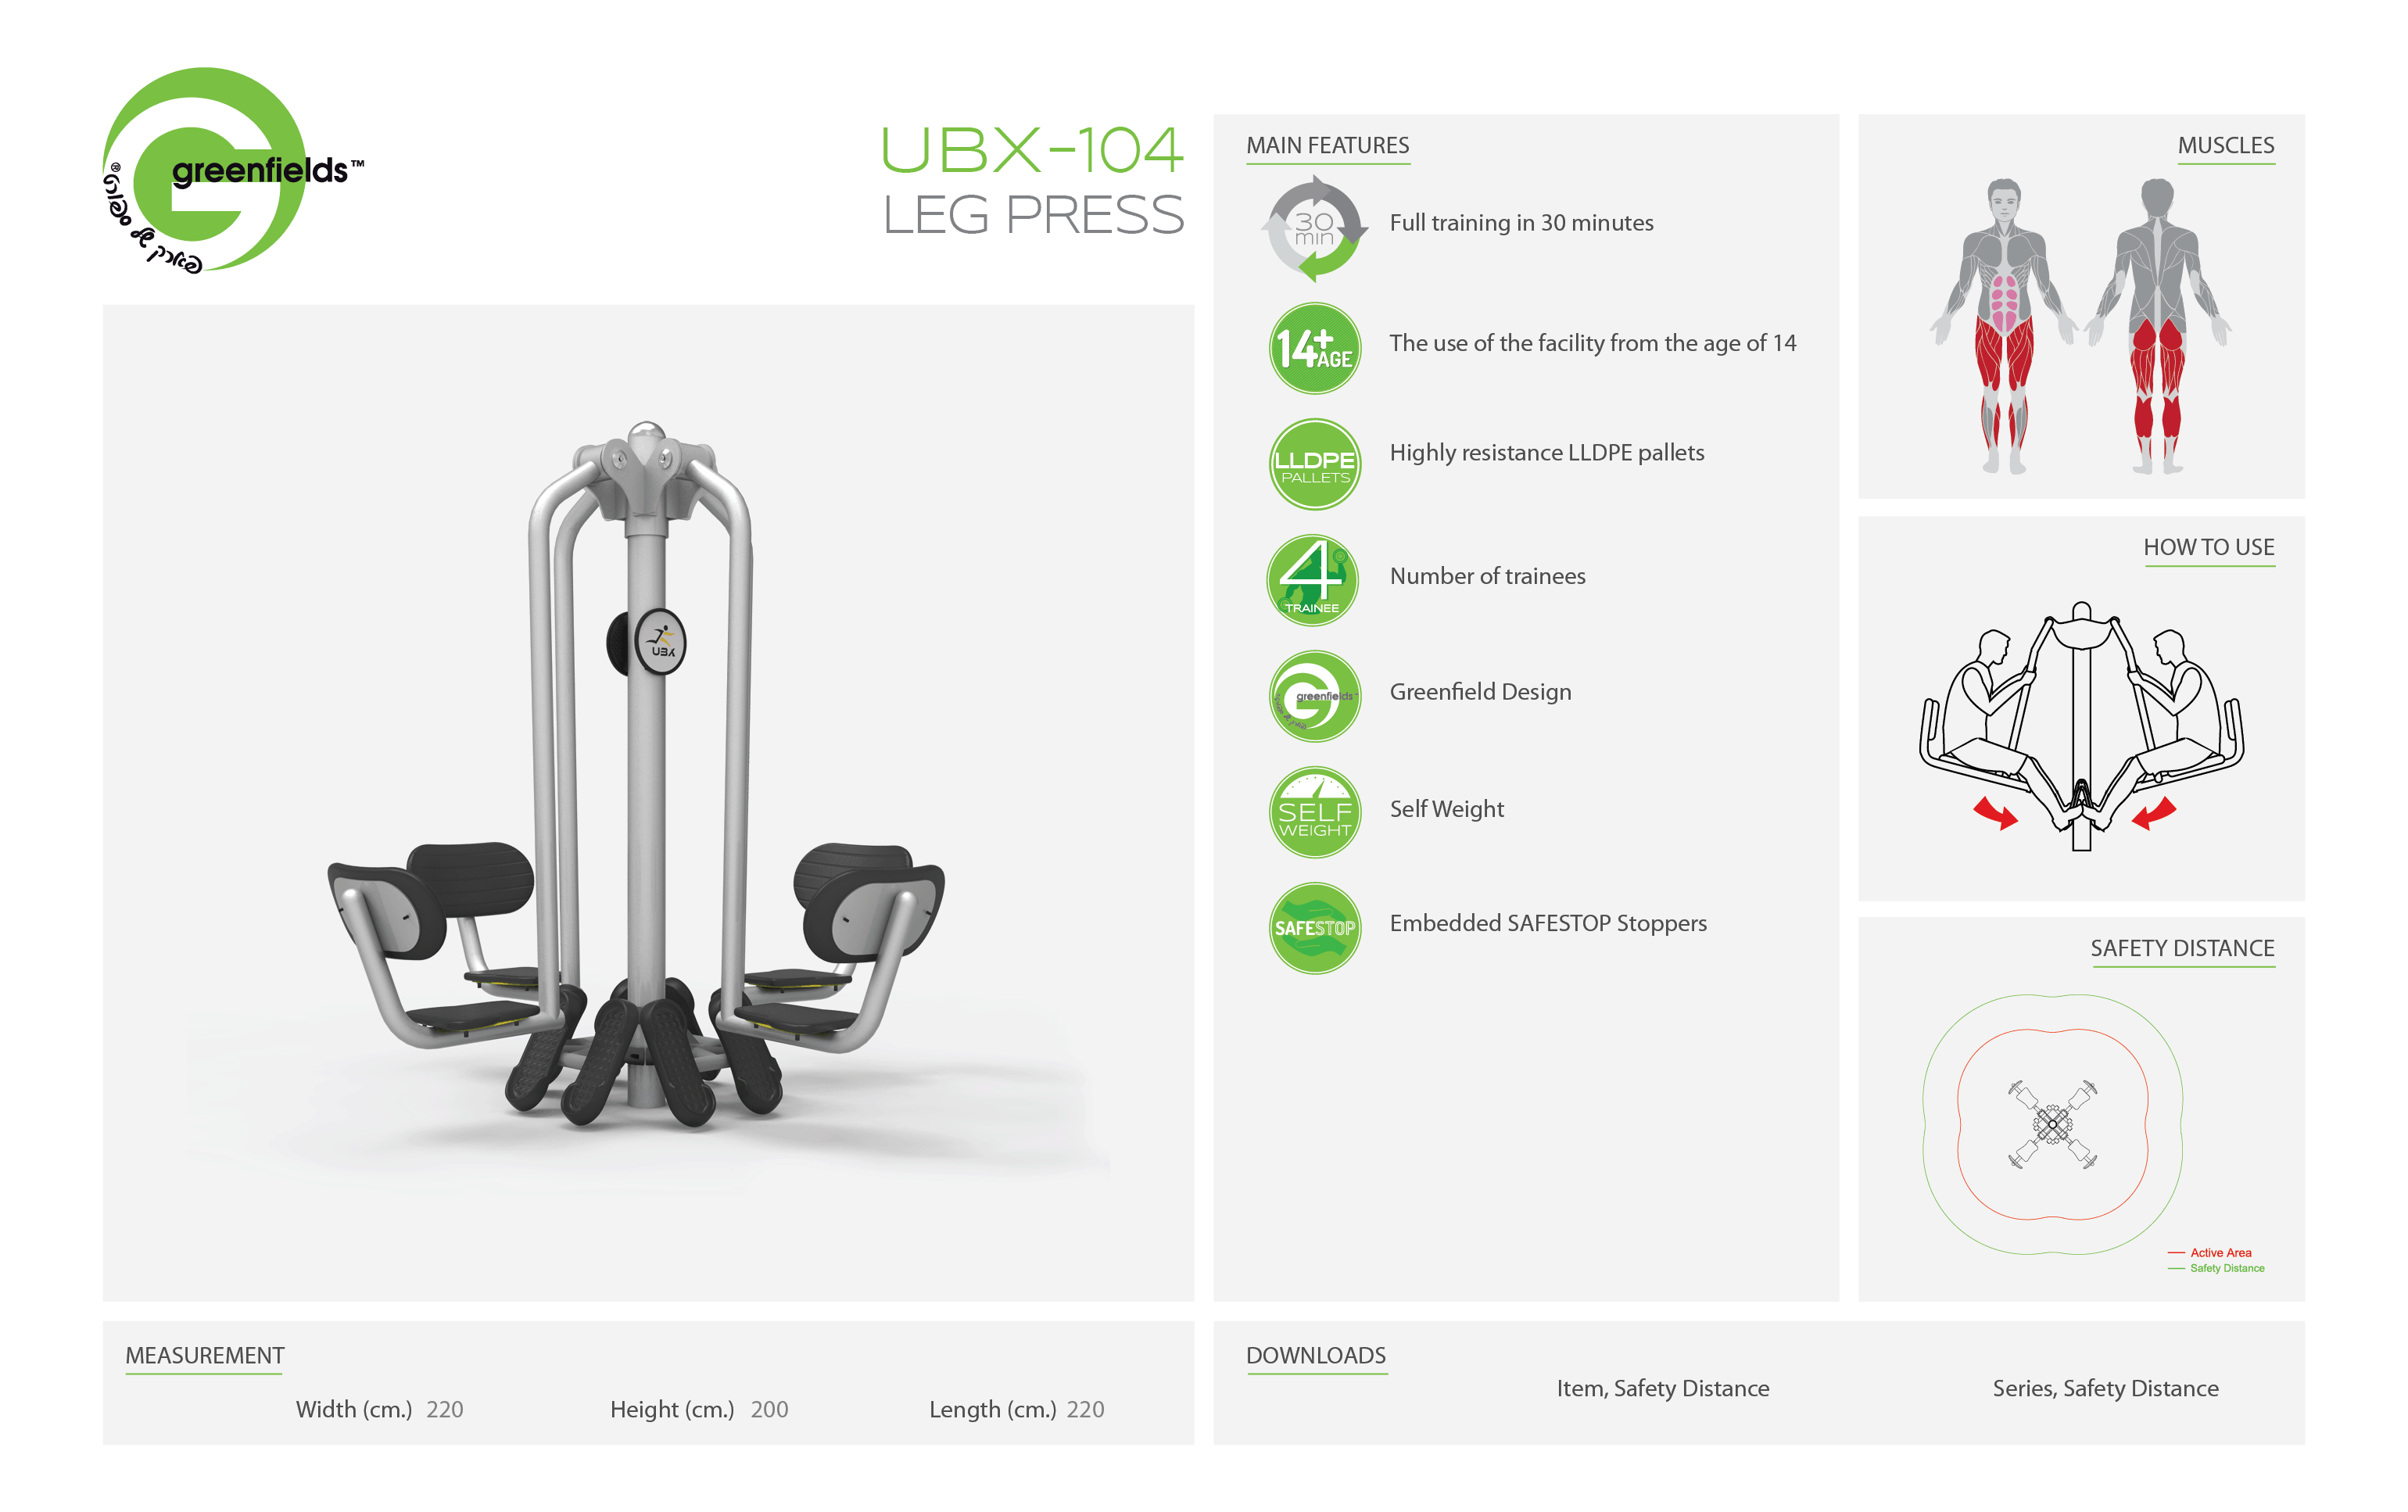 ubx-104 leg press - אורבניקס - מתקן כושר - מולטיטריינר לדחיקת רגליים